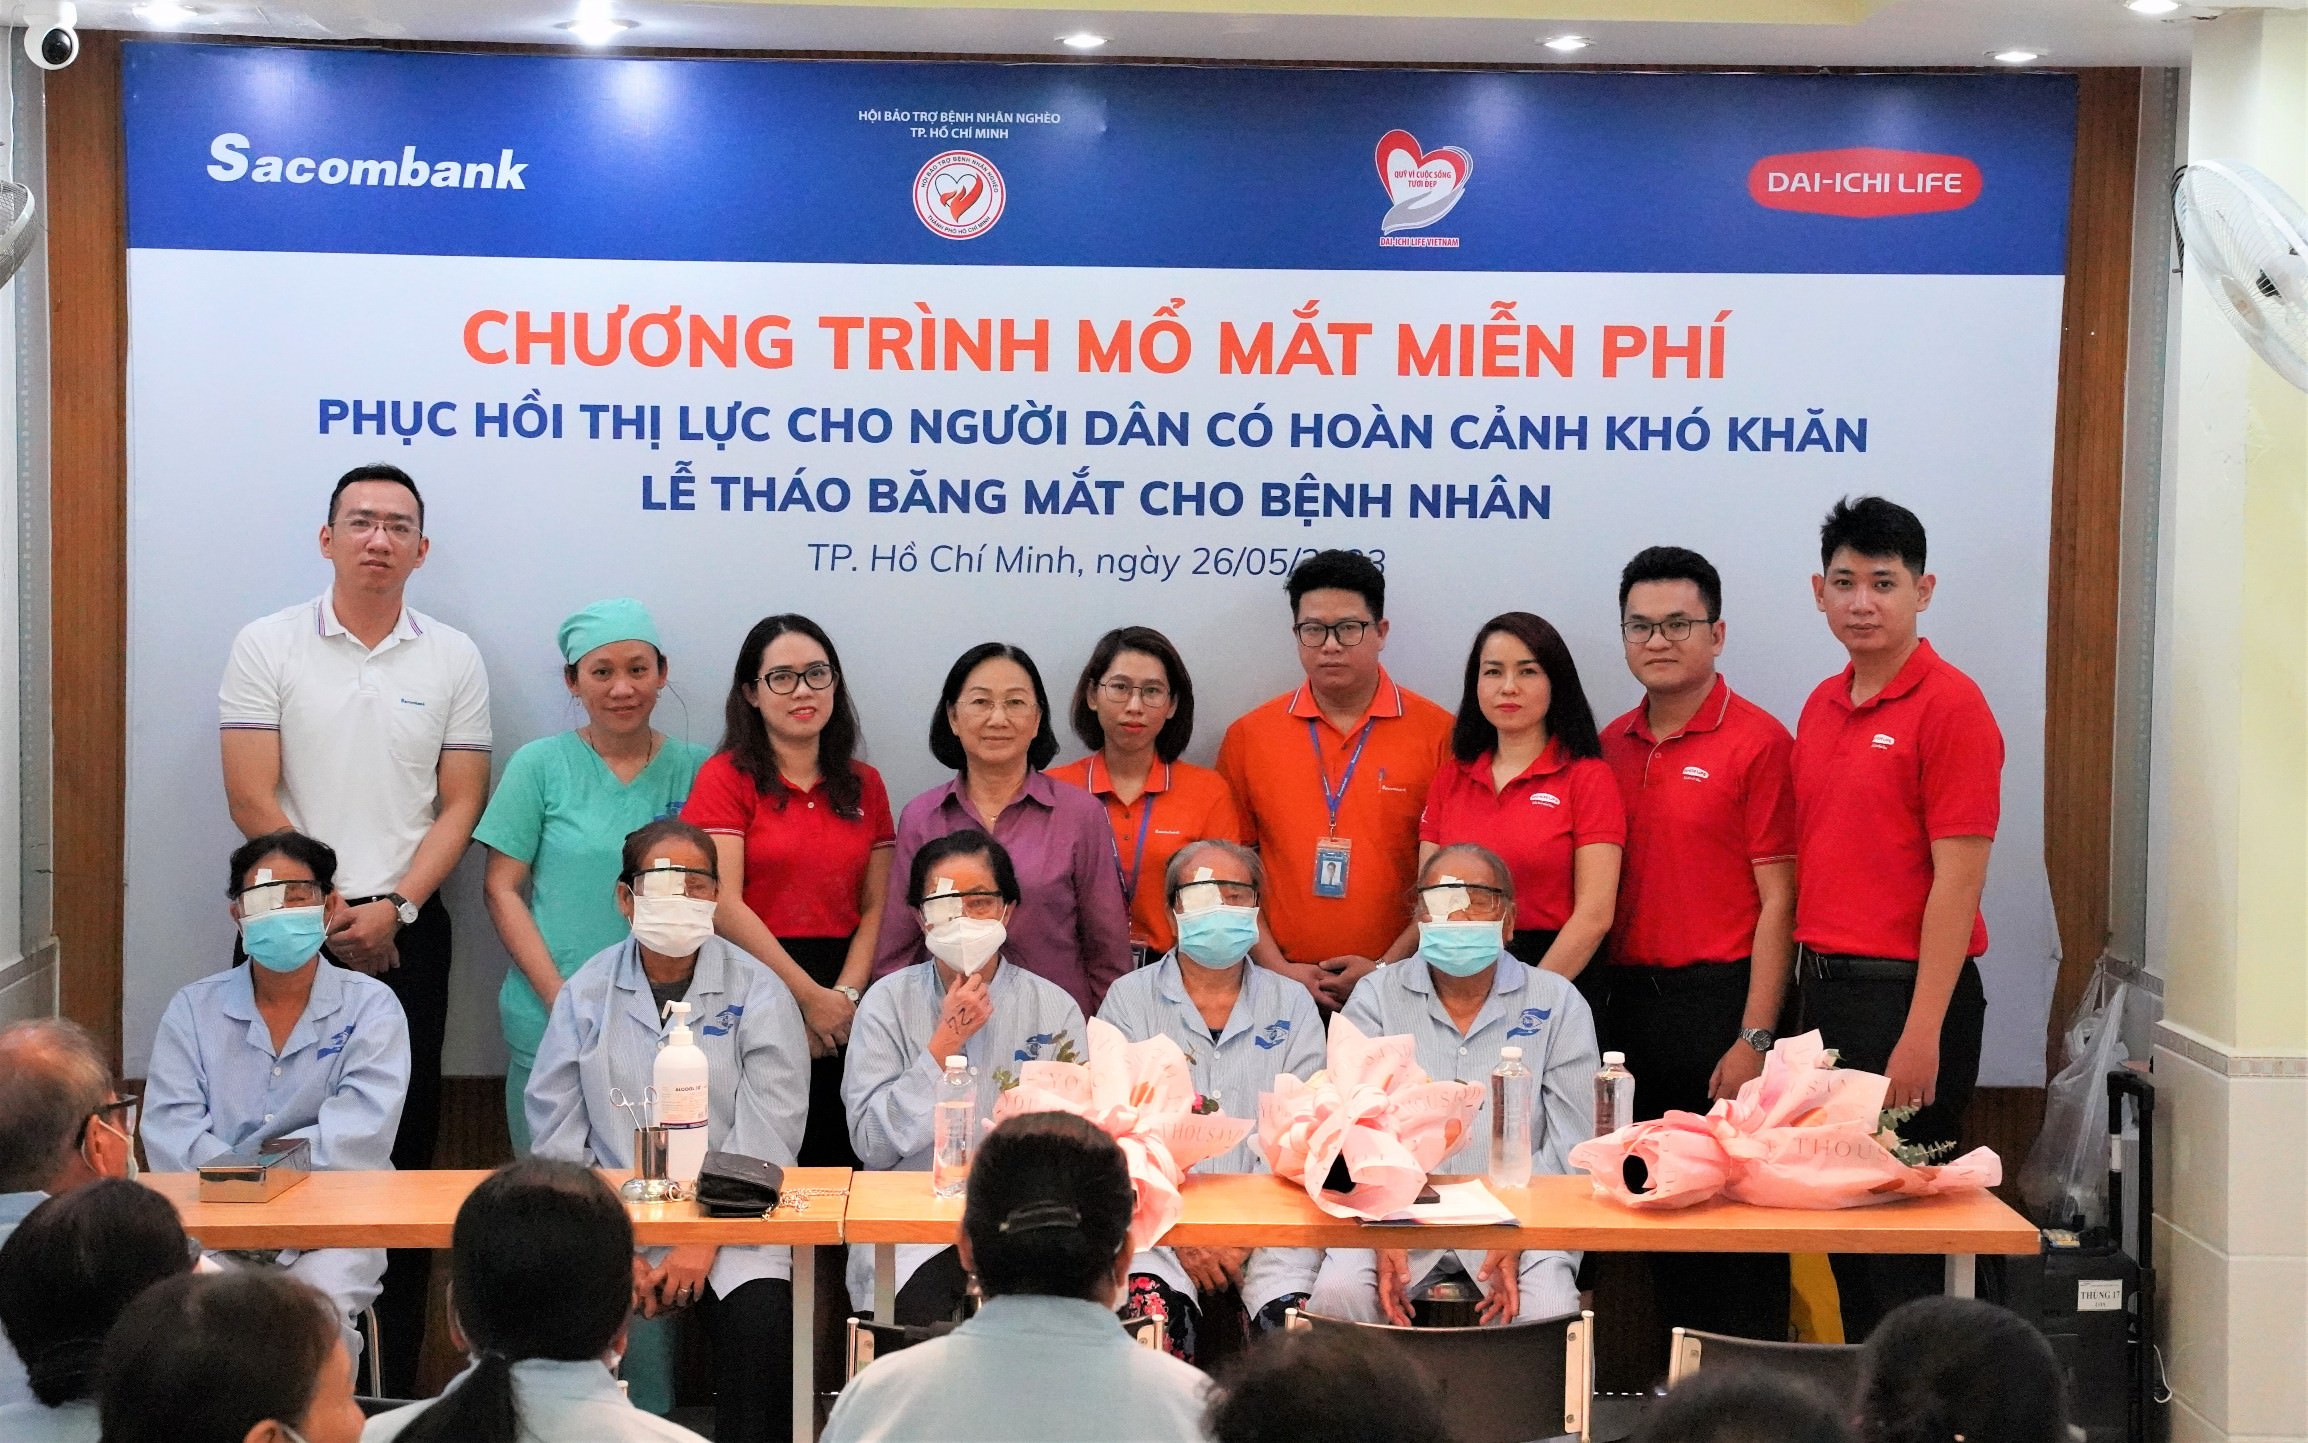 Dai-ichi Life Việt Nam và Sacombank triển khai chương trình Mổ mắt miễn phí cho người dân có hoàn cảnh khó khăn tỉnh Tây Ninh...